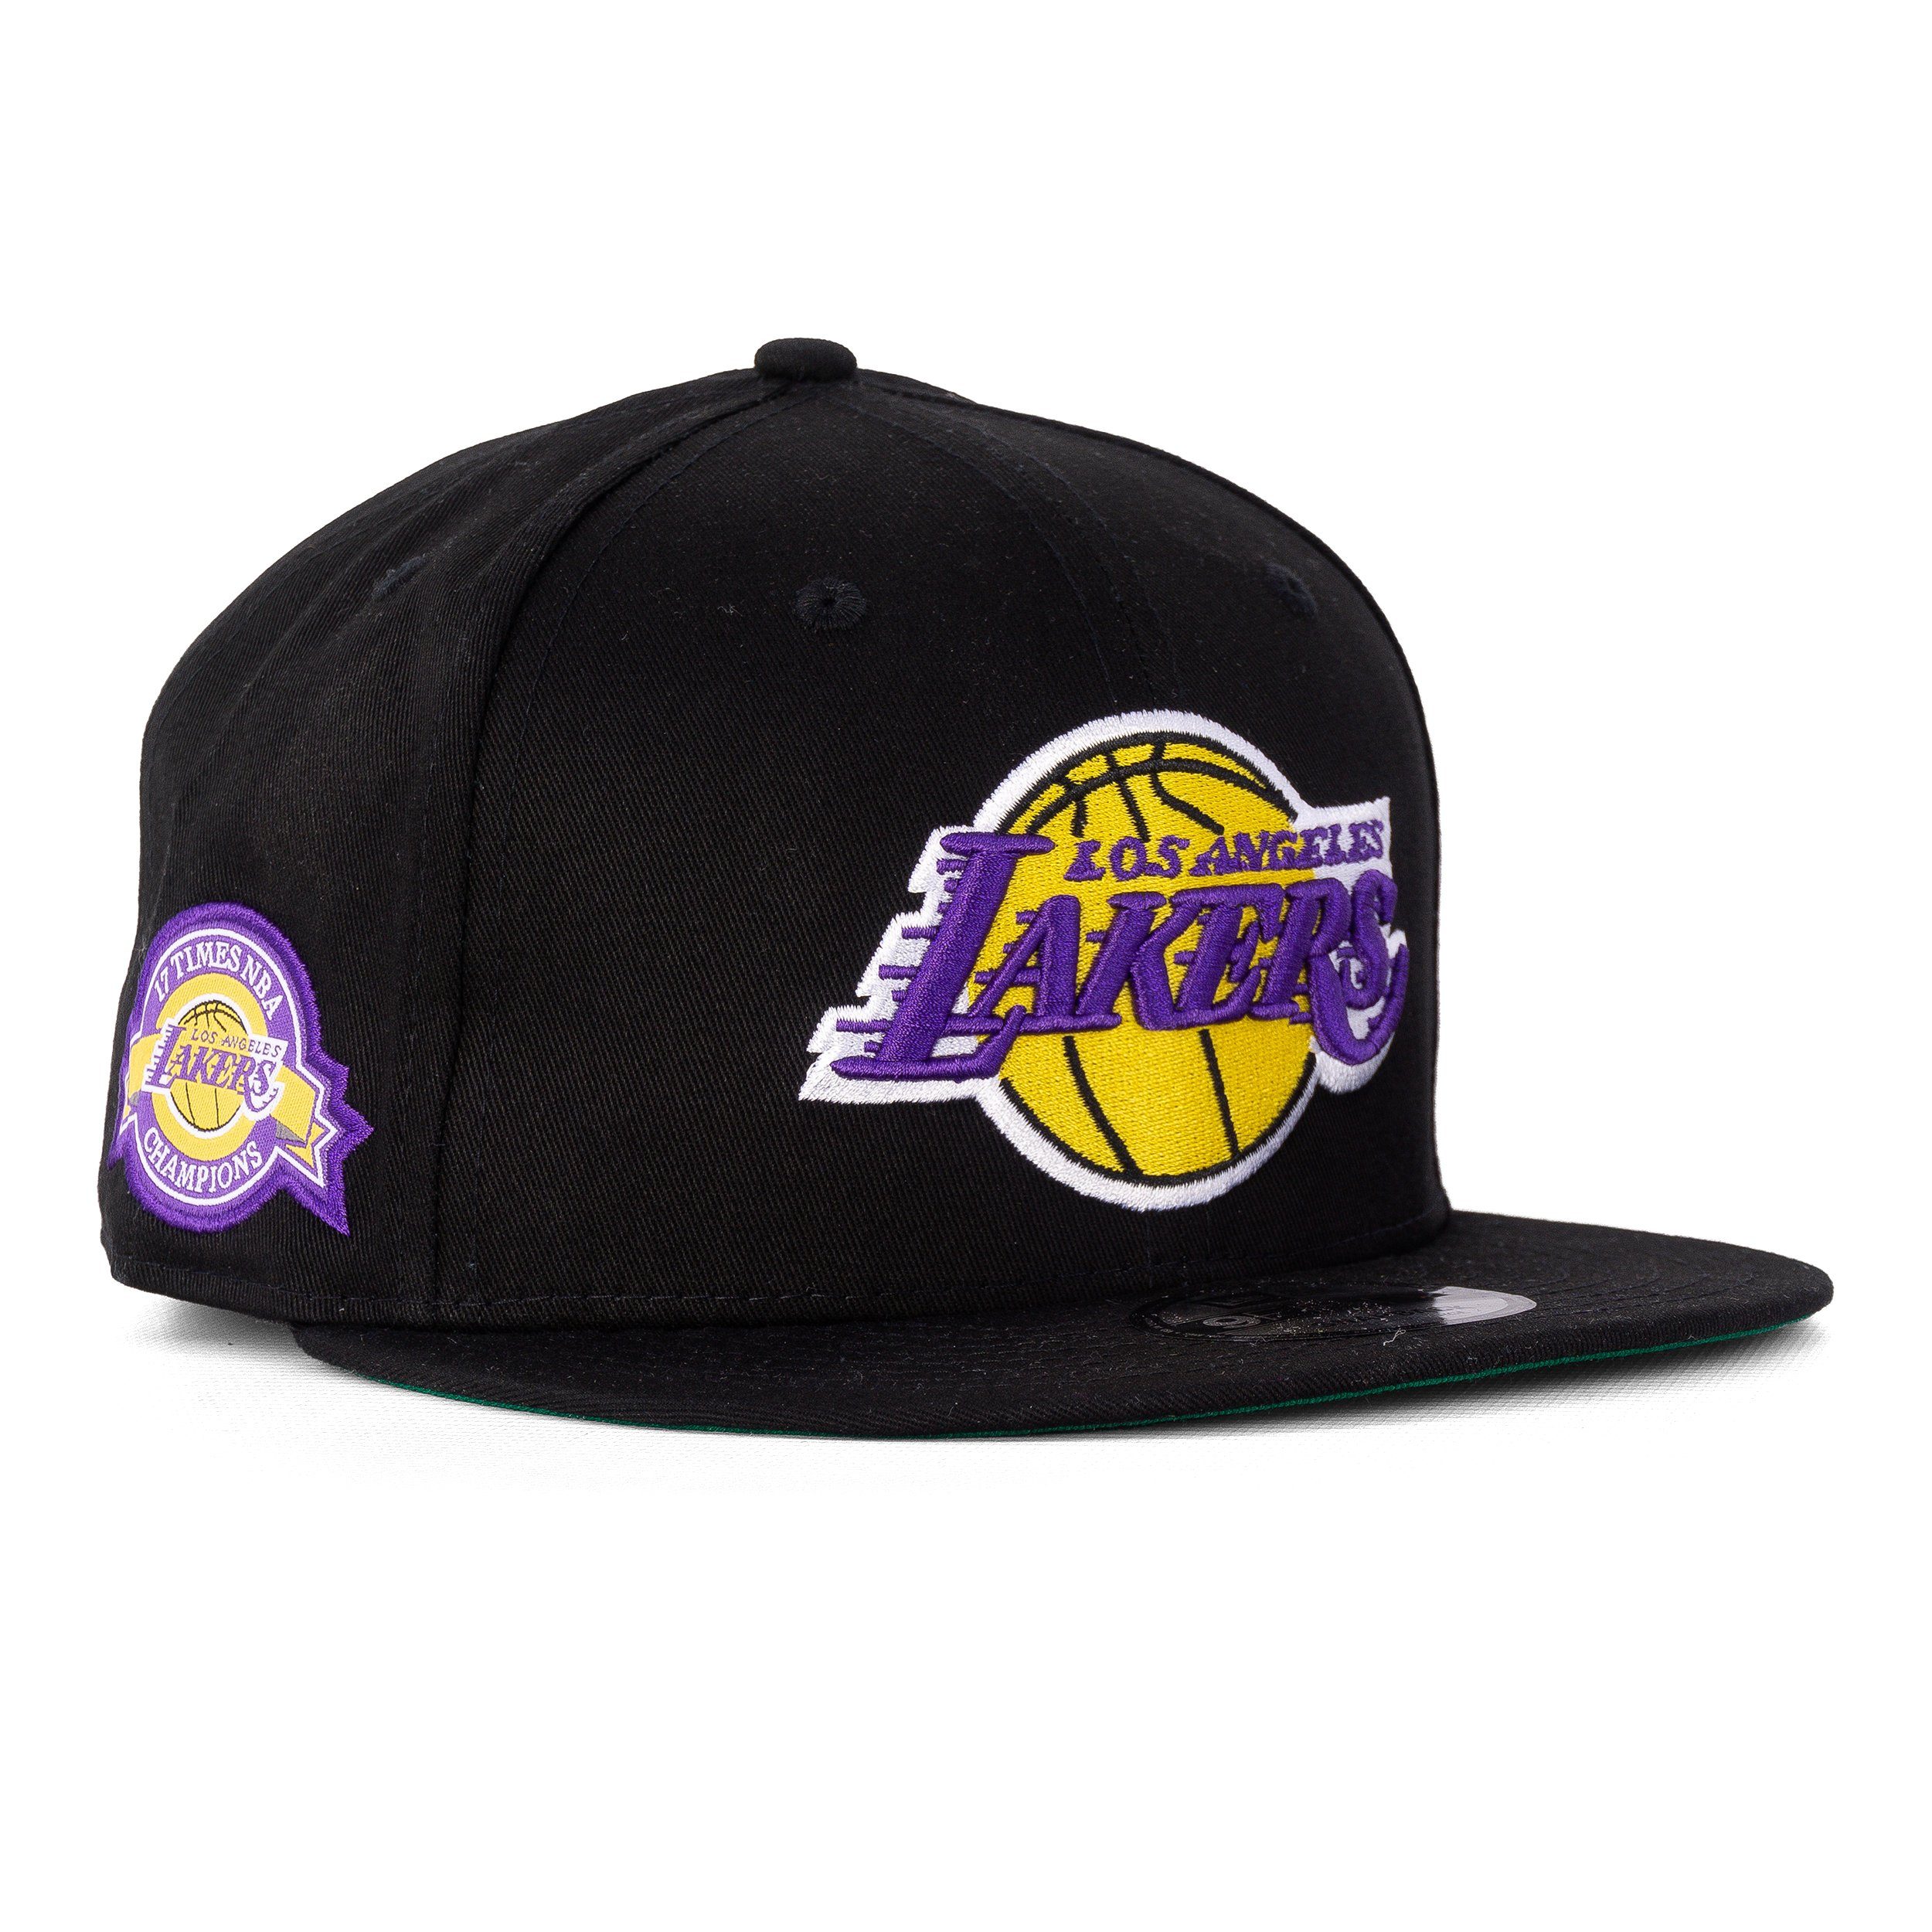 New Era Baseball Cap Era Cap Lakers NBA New 9Fifty LA